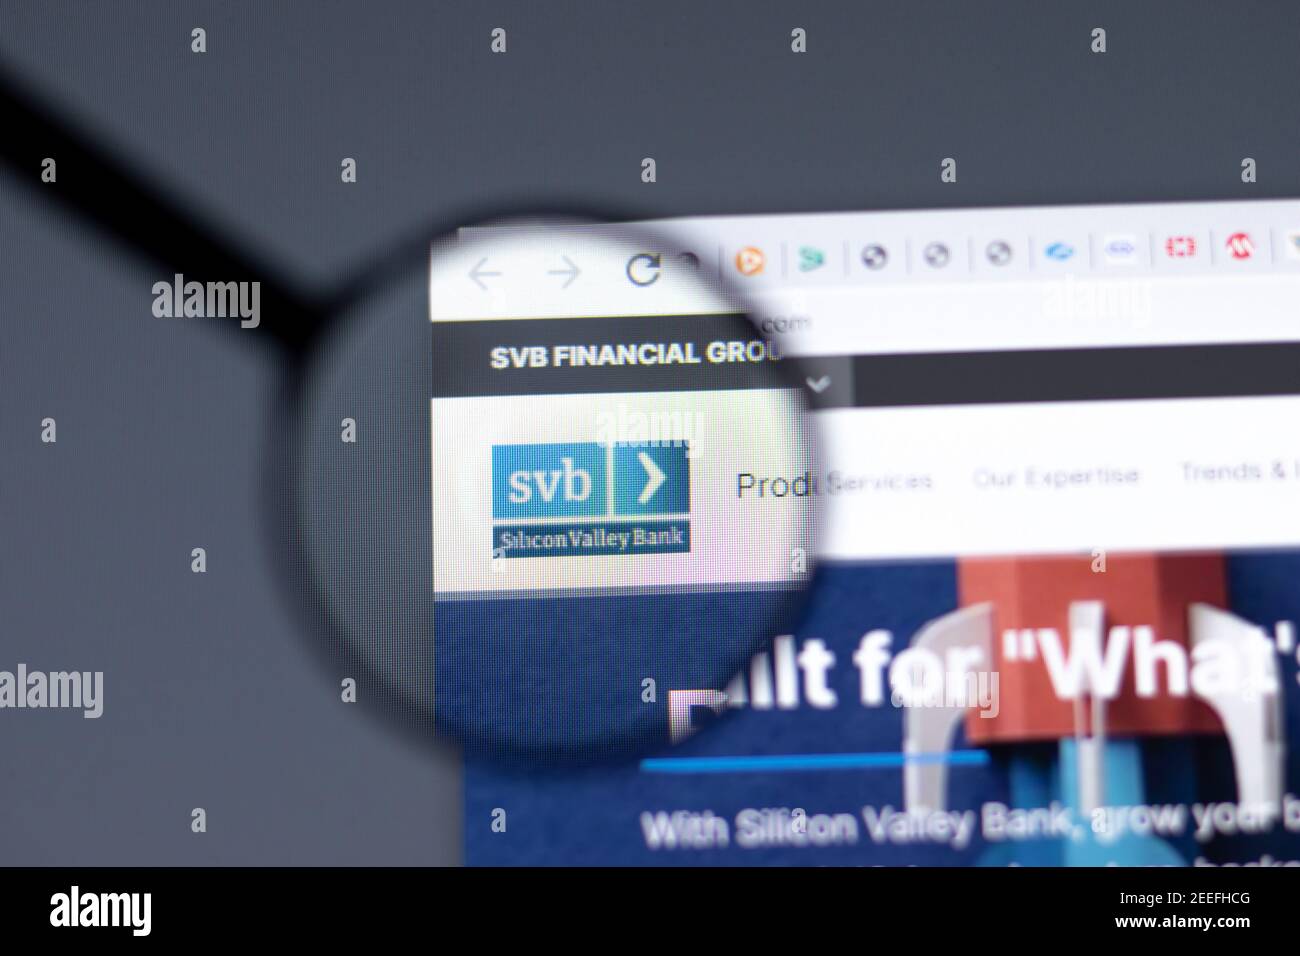 Nueva York, EE.UU. - 15 de febrero de 2021: SVB Financial Group Silicon Valley Bank sitio web en el navegador con el logotipo de la empresa, editorial ilustrativa Foto de stock